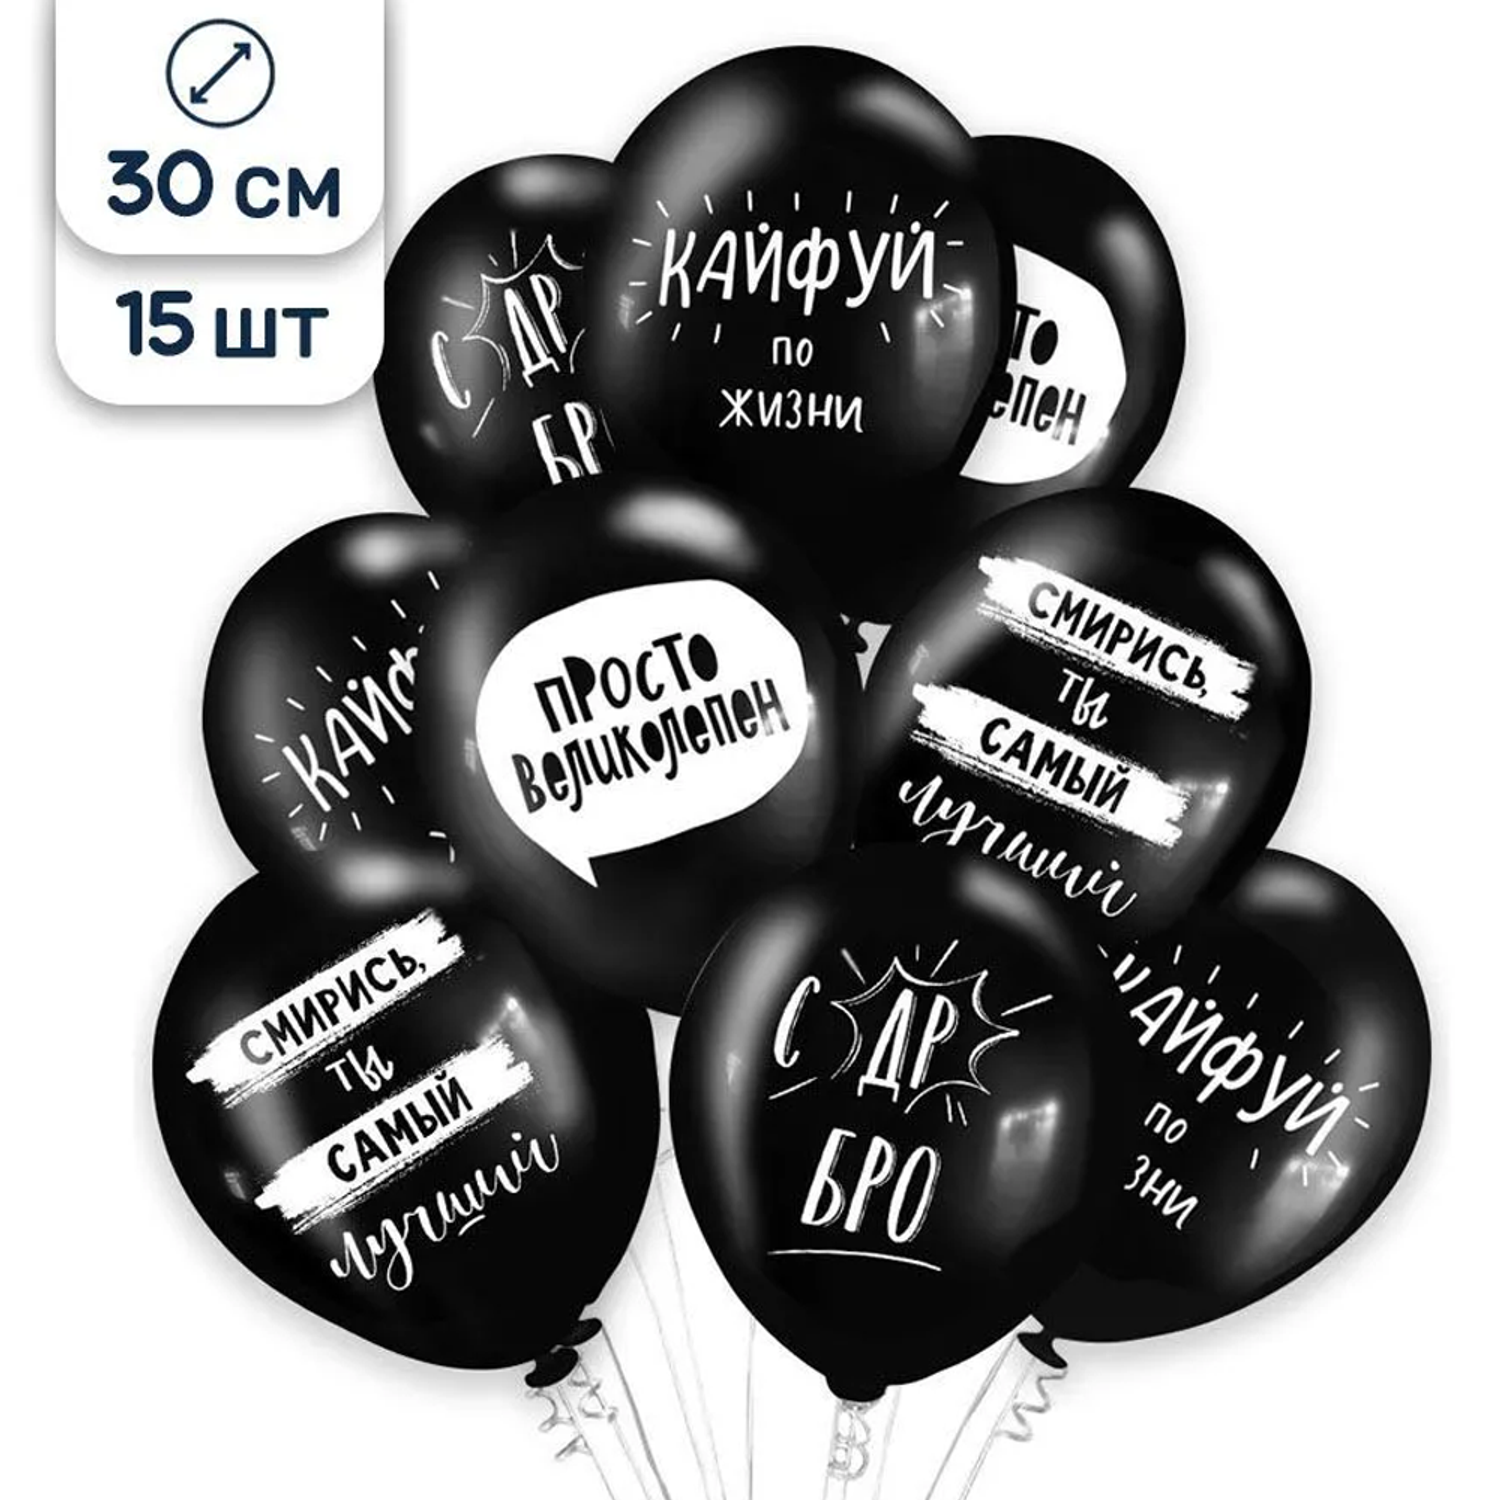 Воздушные шары Riota с приколами черные 30 см 15 шт - фото 2